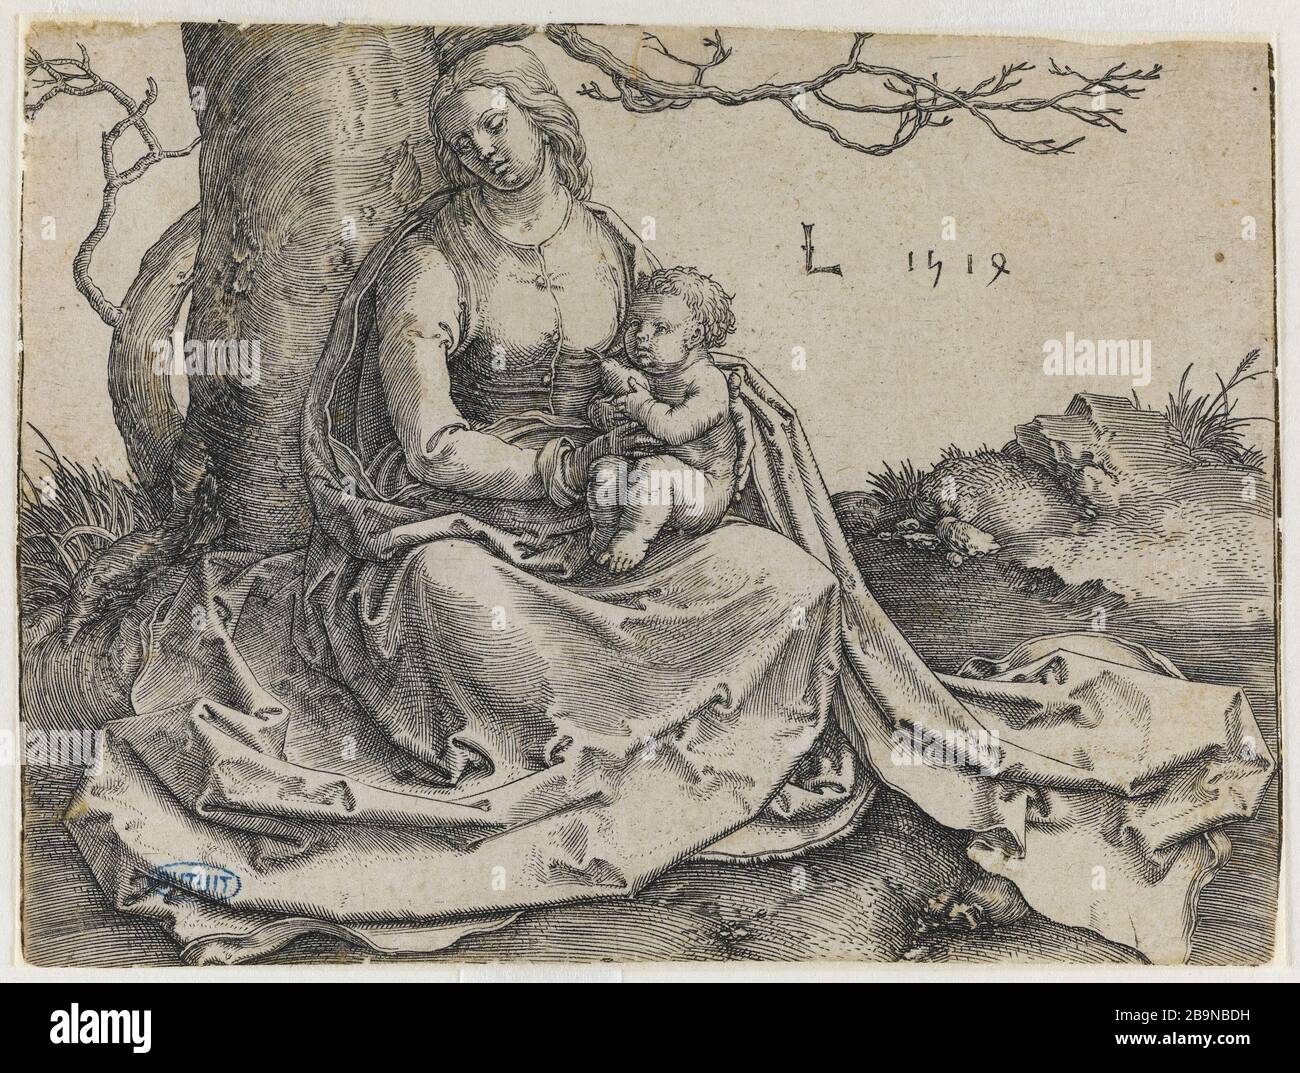 Virgin and Child seat in front of a tree - Bartsch 83 Lucas de Leyde (1494-1533). 'La Vierge à l'Enfant assise au pied d'un arbre' - Bartsch 83. Burin. 1523. Musée des Beaux-Arts de la Ville de Paris, Petit Palais. Stock Photo